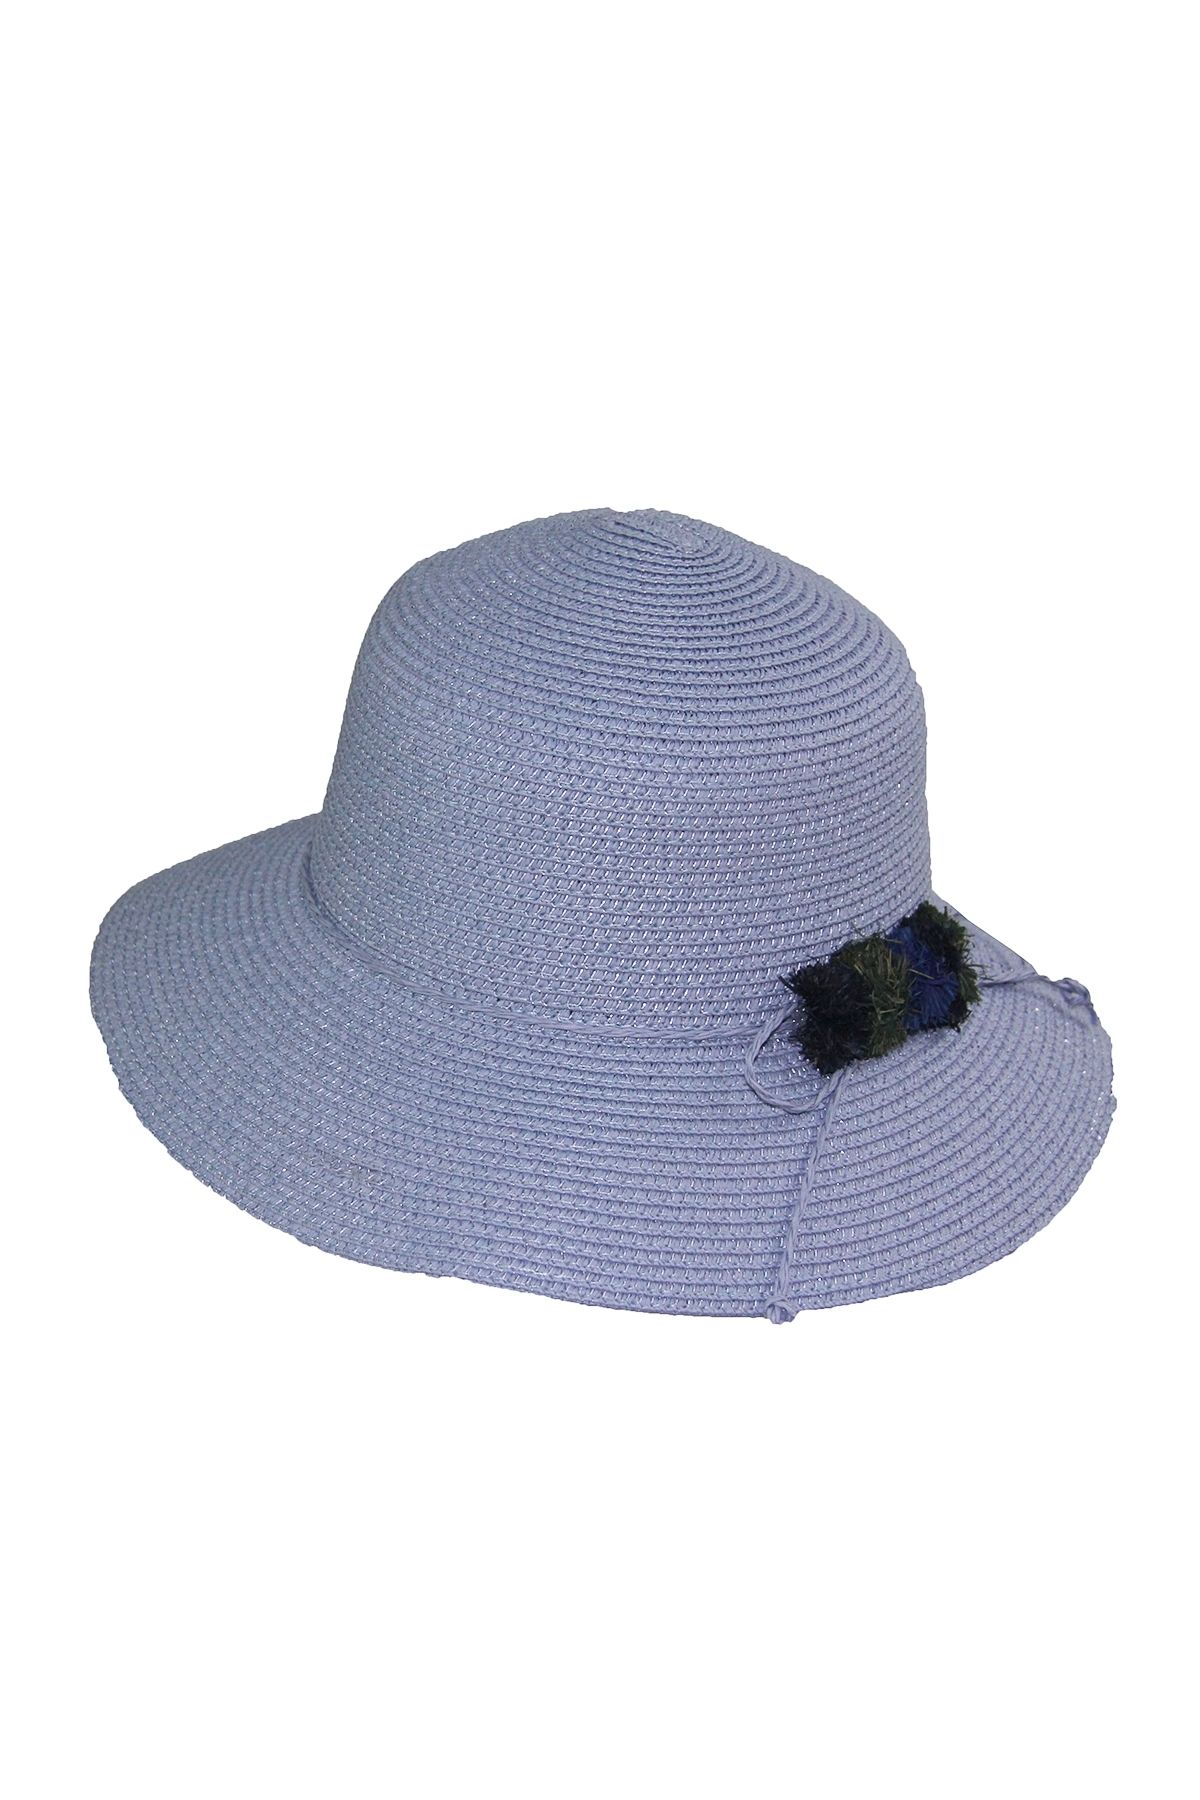 Bay Şapkacı - Kadın Hasır Şapka 3851